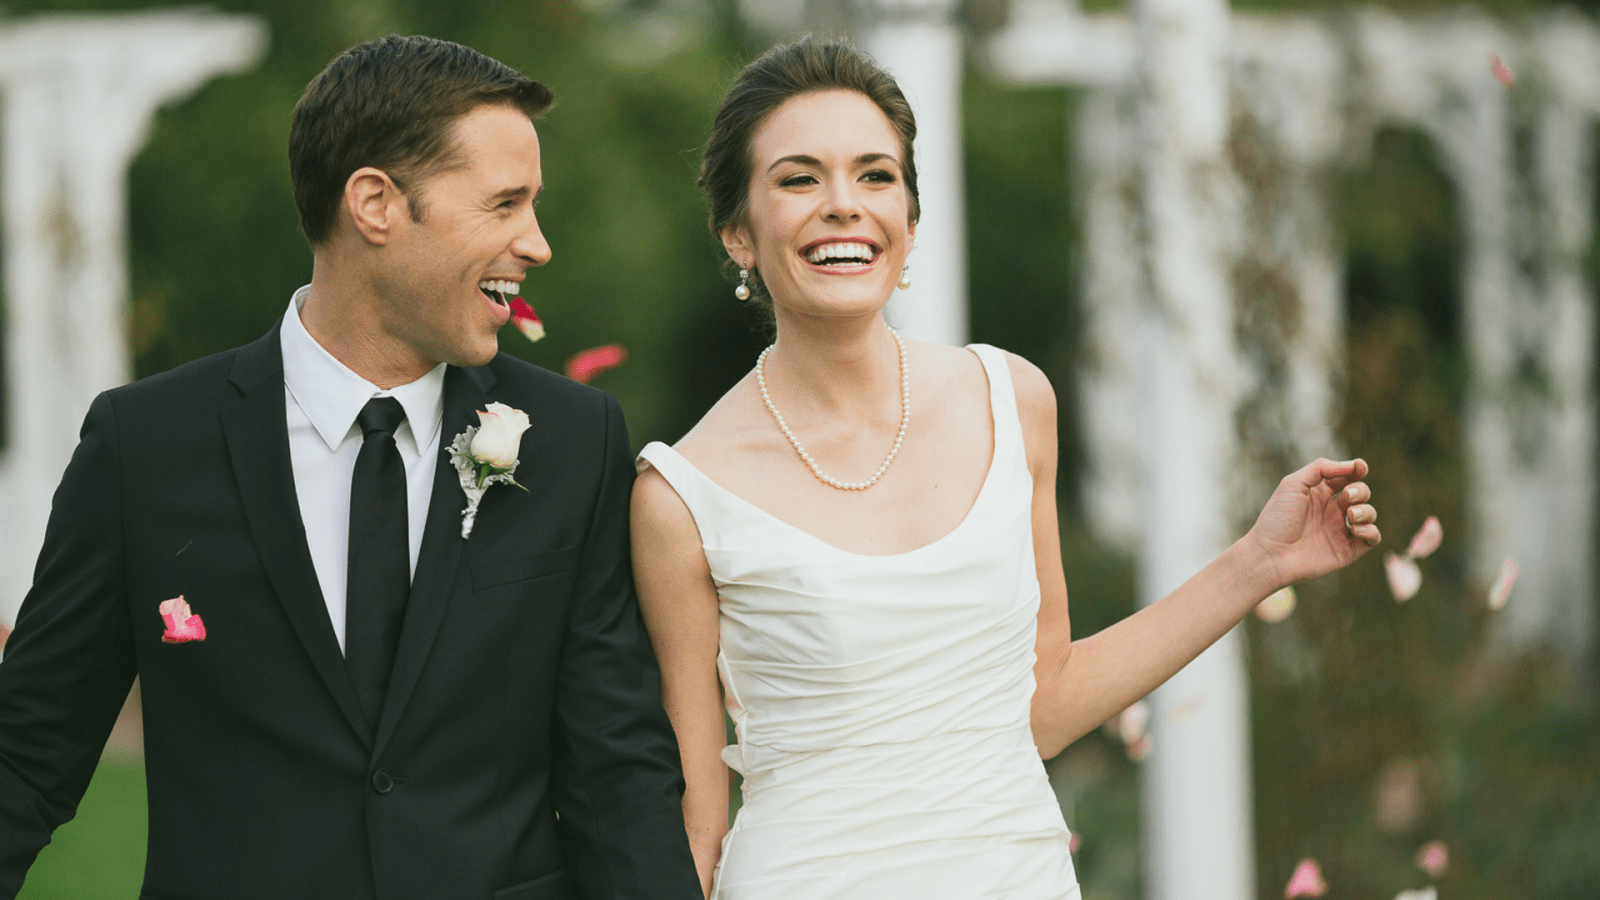 عشر نصائح لابتسامة رائعة في حفل الزفاف الخاص بك